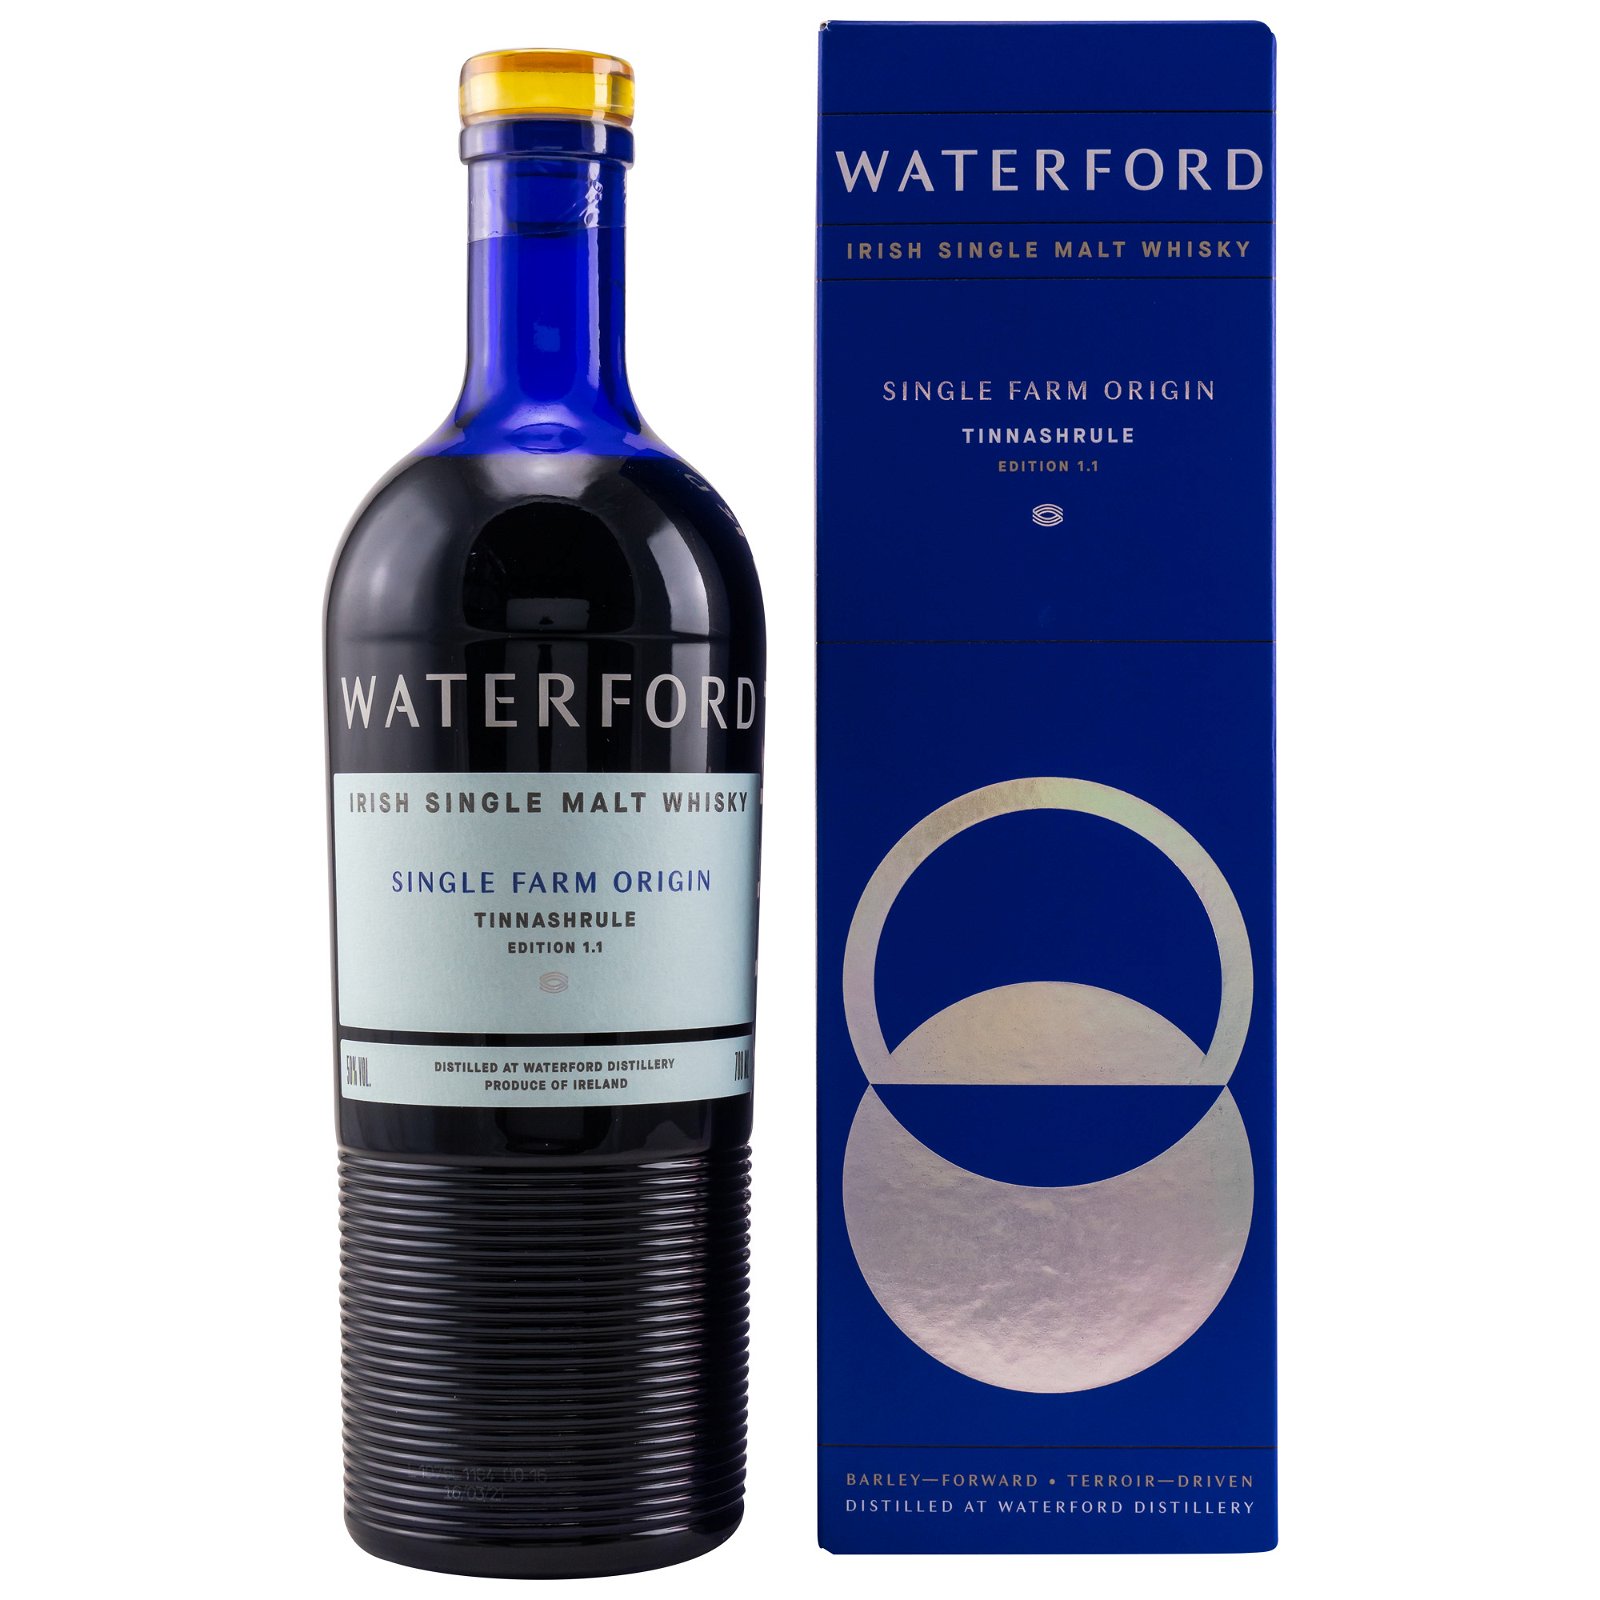 Waterford Tinnashrule Edition 1.1 Germany Exklusive Single Farm Origin Irish Single Malt Whisky